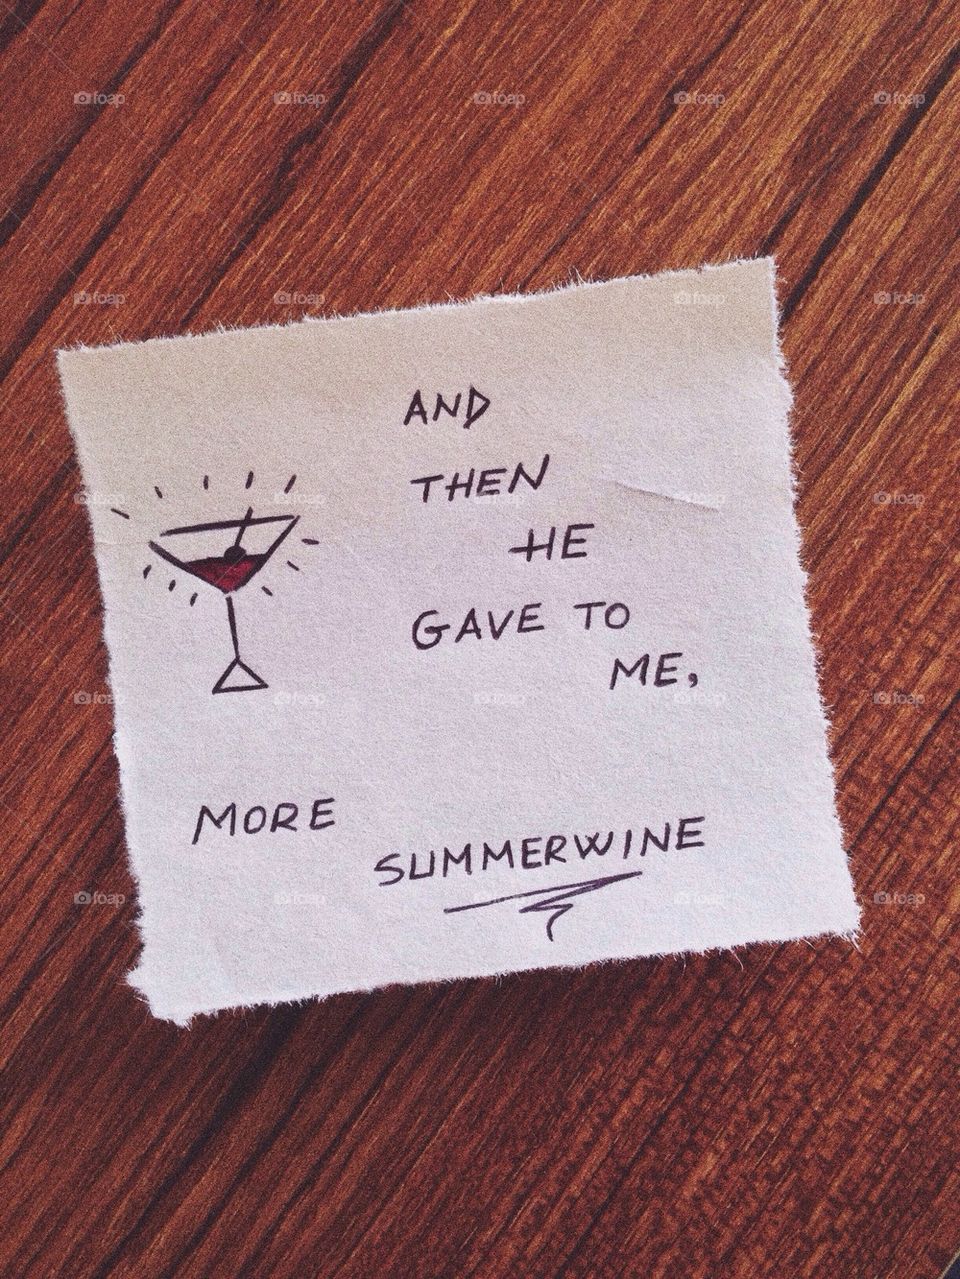 Summer-wine